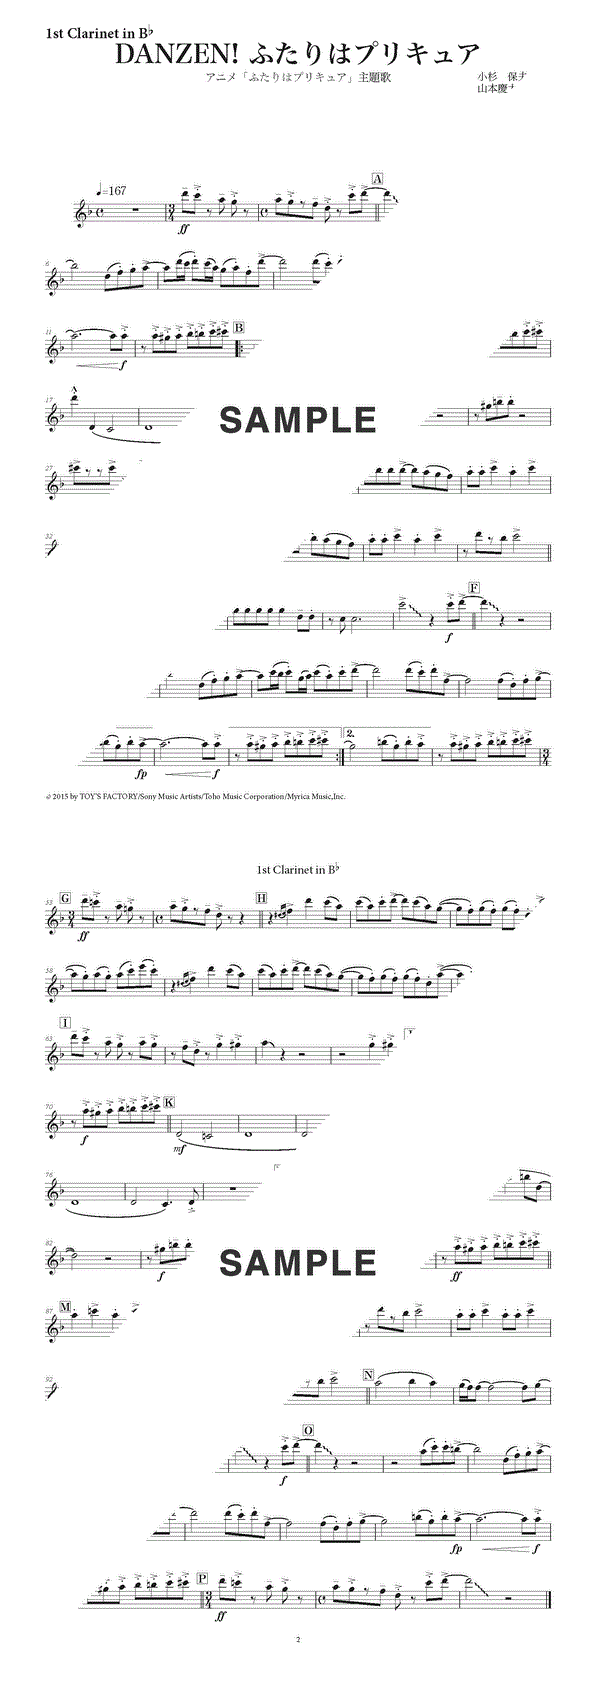 楽譜 Danzen ふたりはプリキュア 1st Clarinet In B 五條 真由美 パート譜 提供 ストーンミュージック 楽譜 Elise